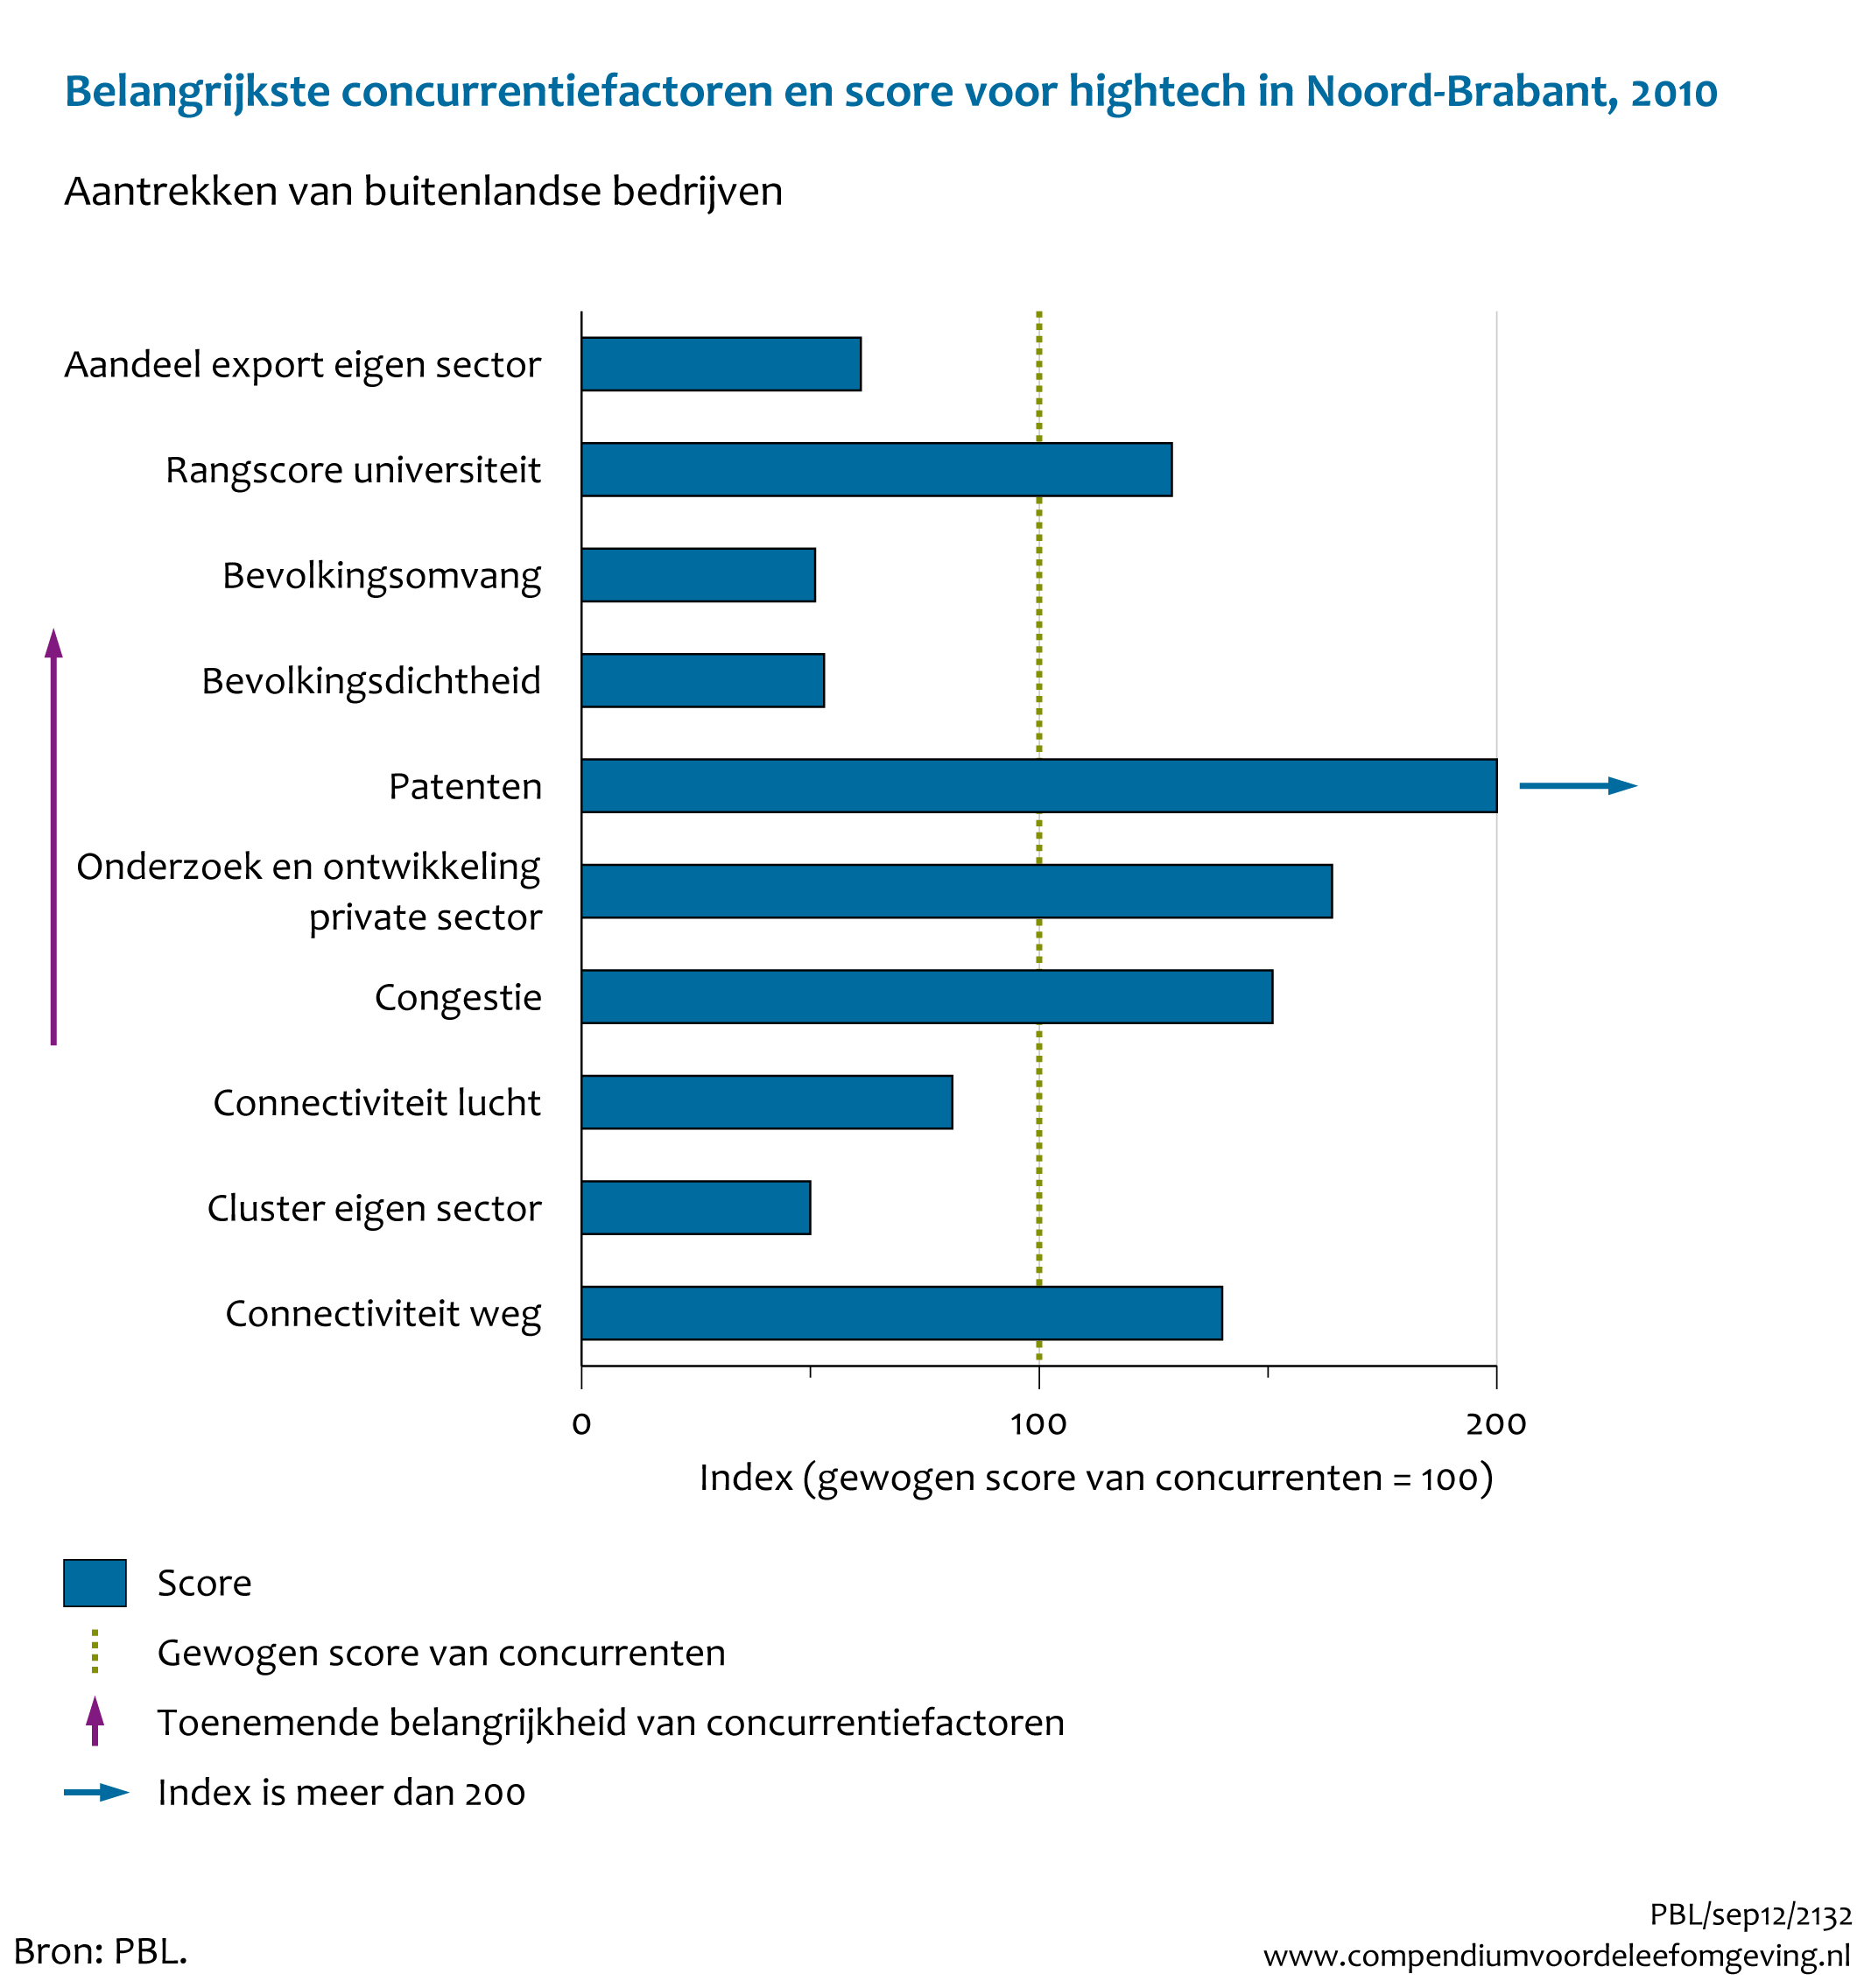 Figuur Belangrijkste concurrentiefactoren en score voor hightech bij aantrekken van buitenlandse bedrijven in Noord-Brabant, 2010. In de rest van de tekst wordt deze figuur uitgebreider uitgelegd.